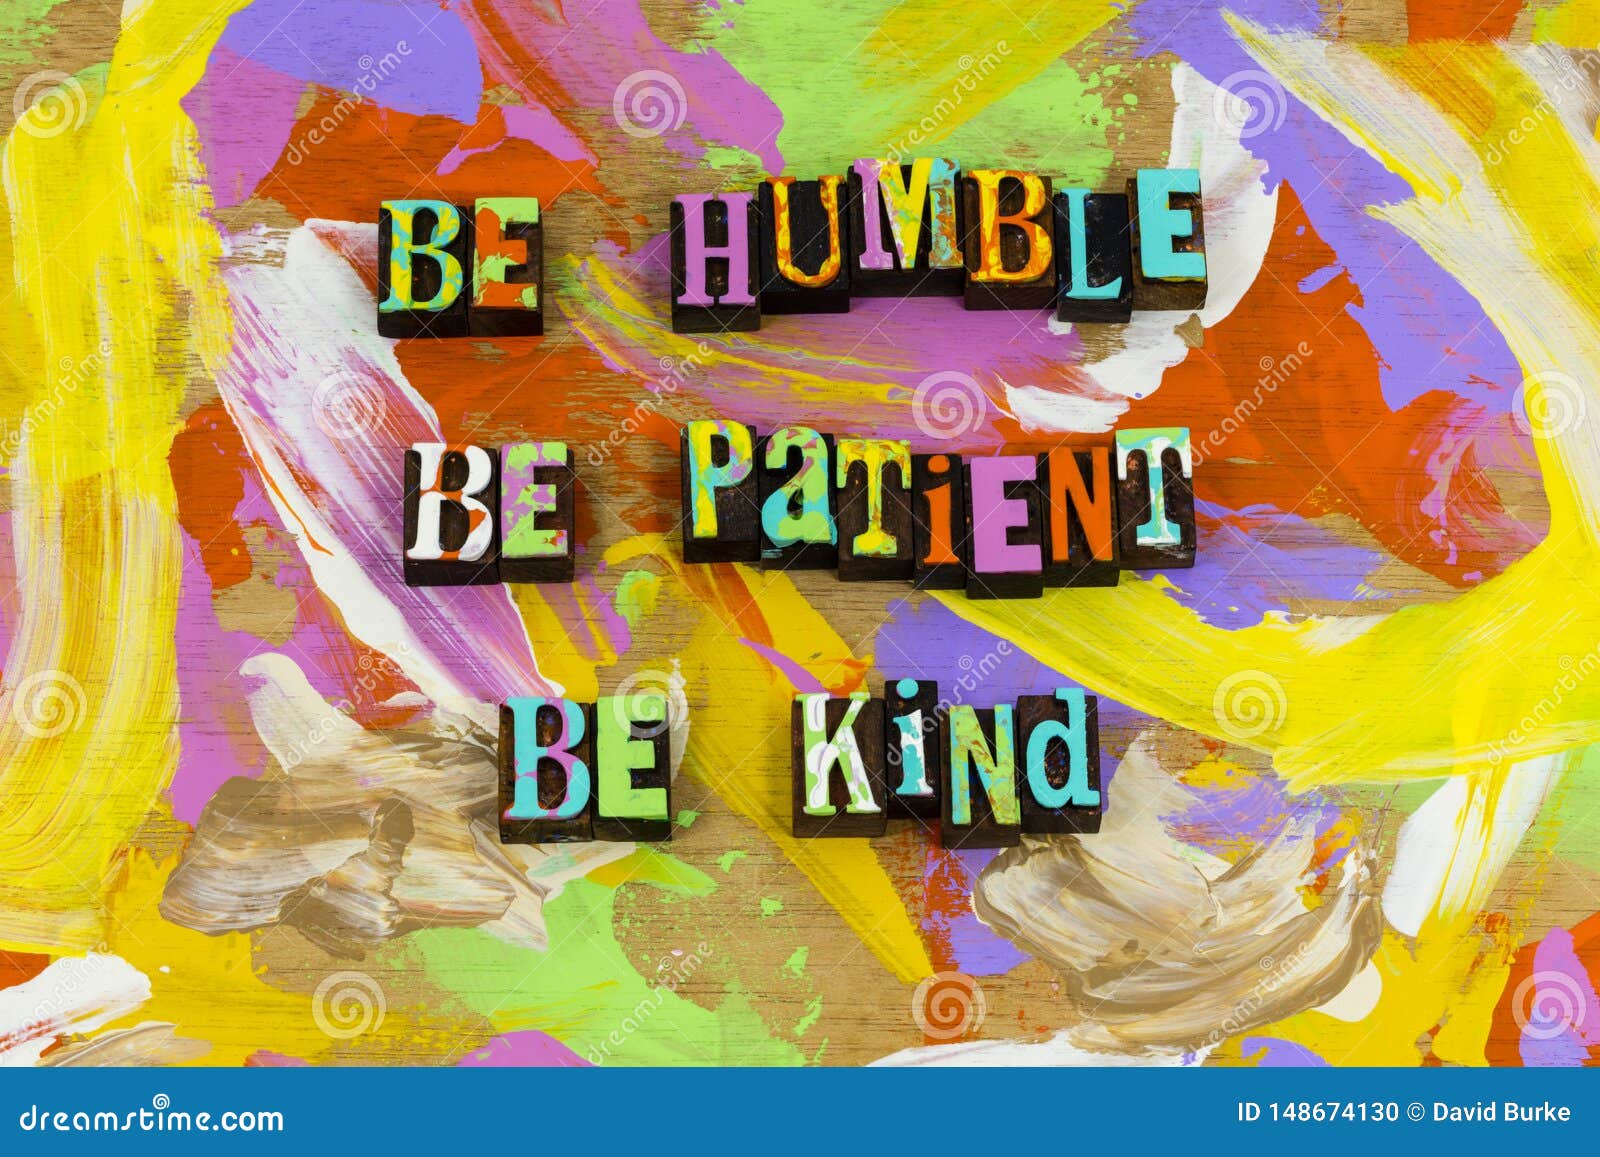 be nice humble honest patient gentle kind happy people